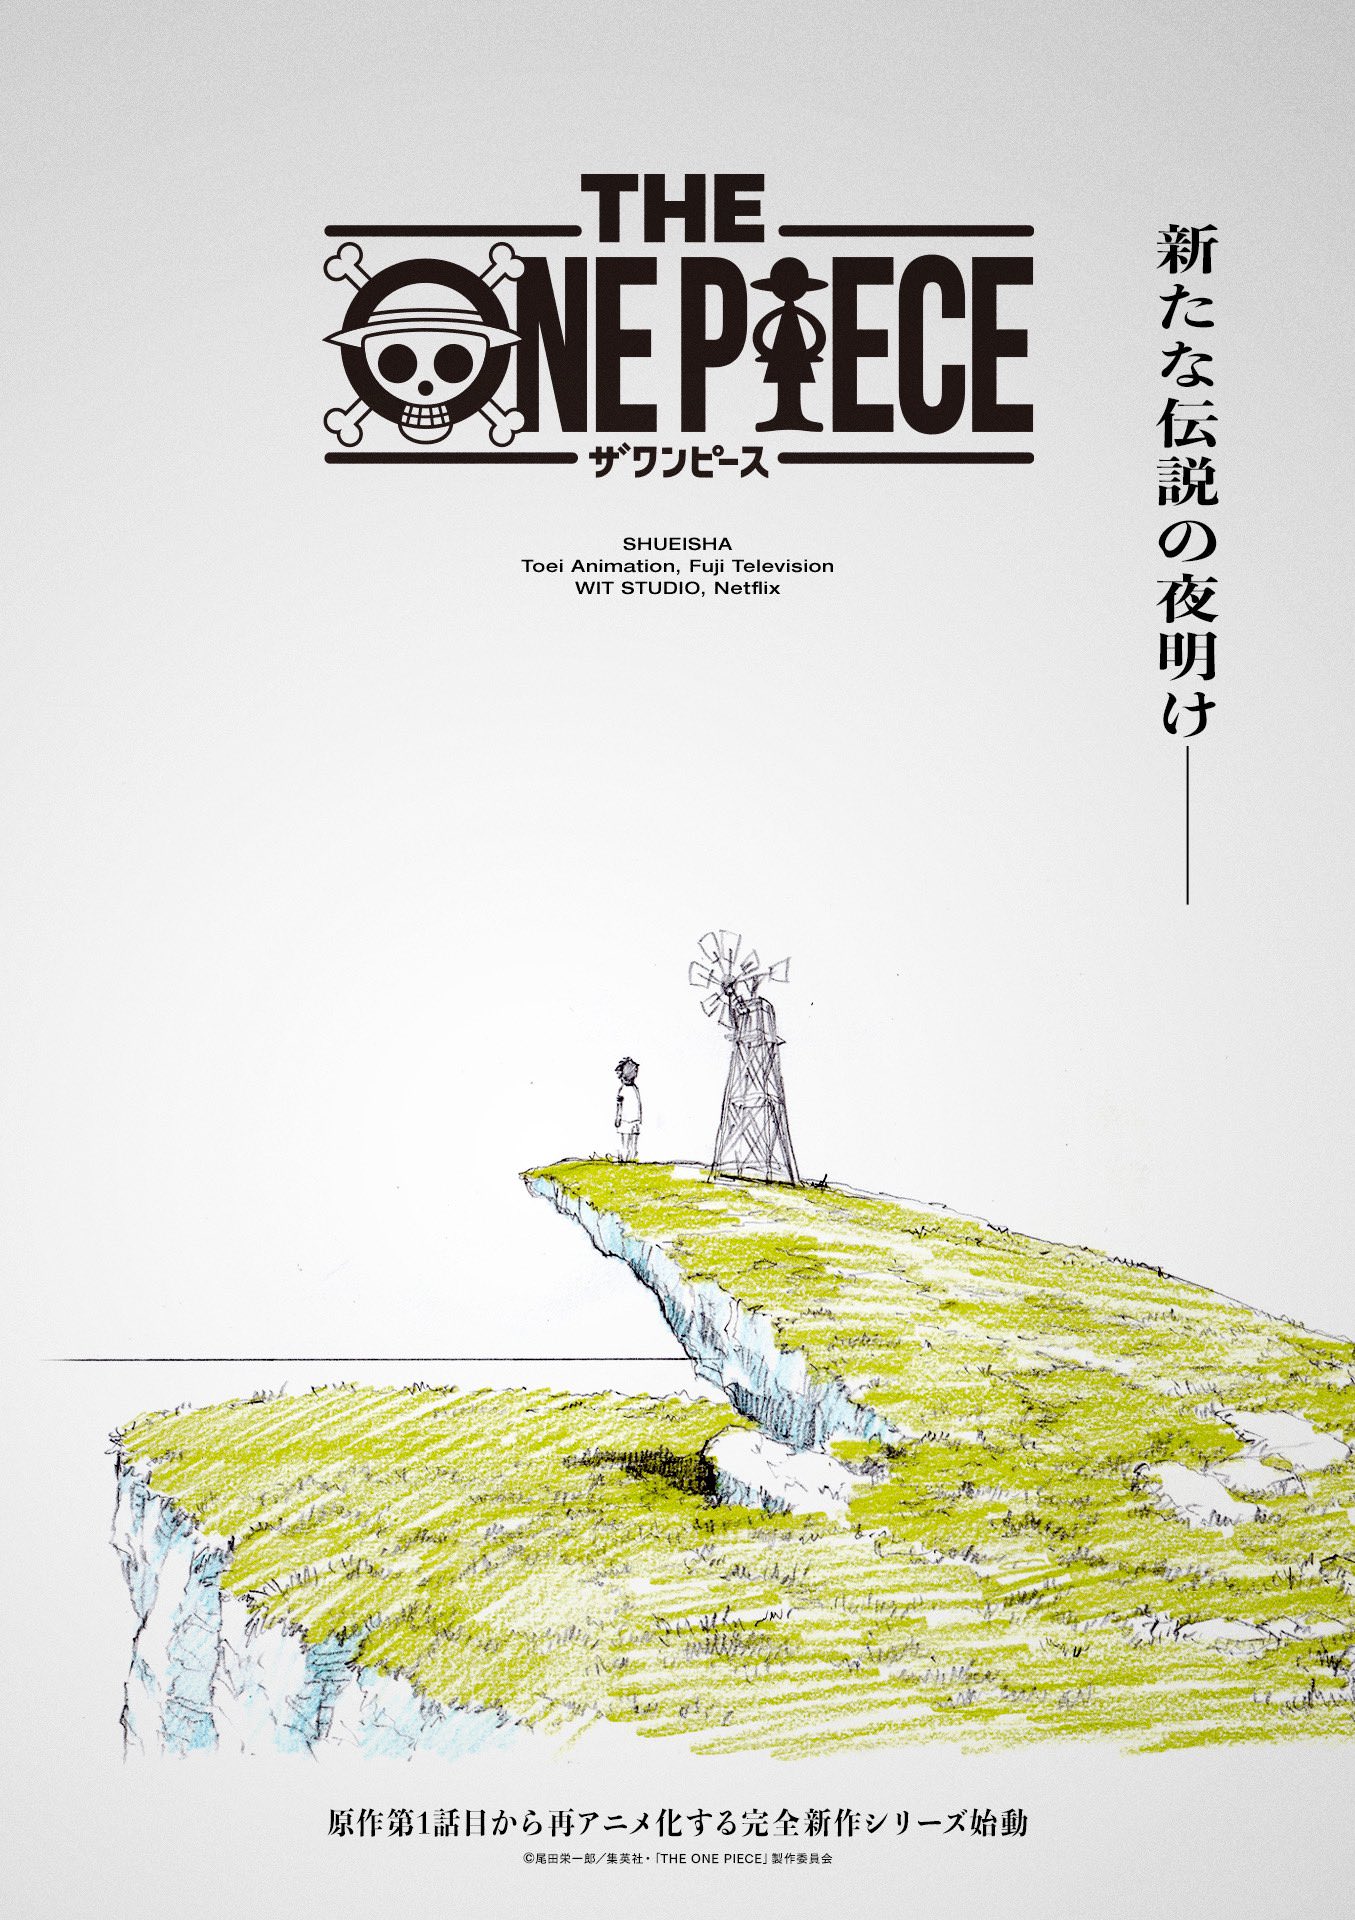 尾田栄一郎「ONE PIECE (ワンピース)」第107巻 11月2日発売!